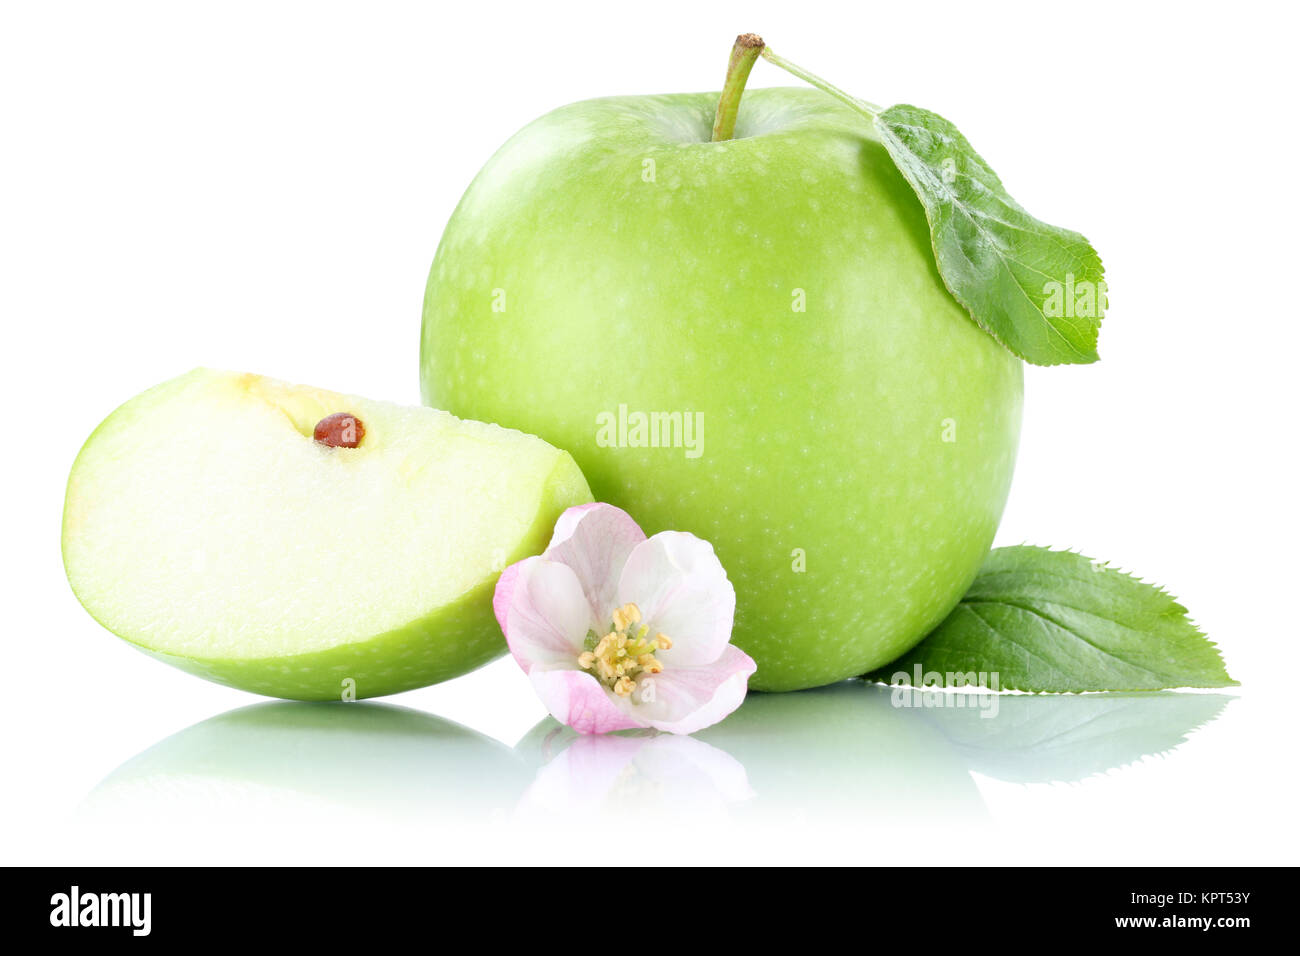 Apfel Frucht Obst grün geschnitten Freisteller freigestellt isoliert vor einem weissen Hintergrund Stock Photo